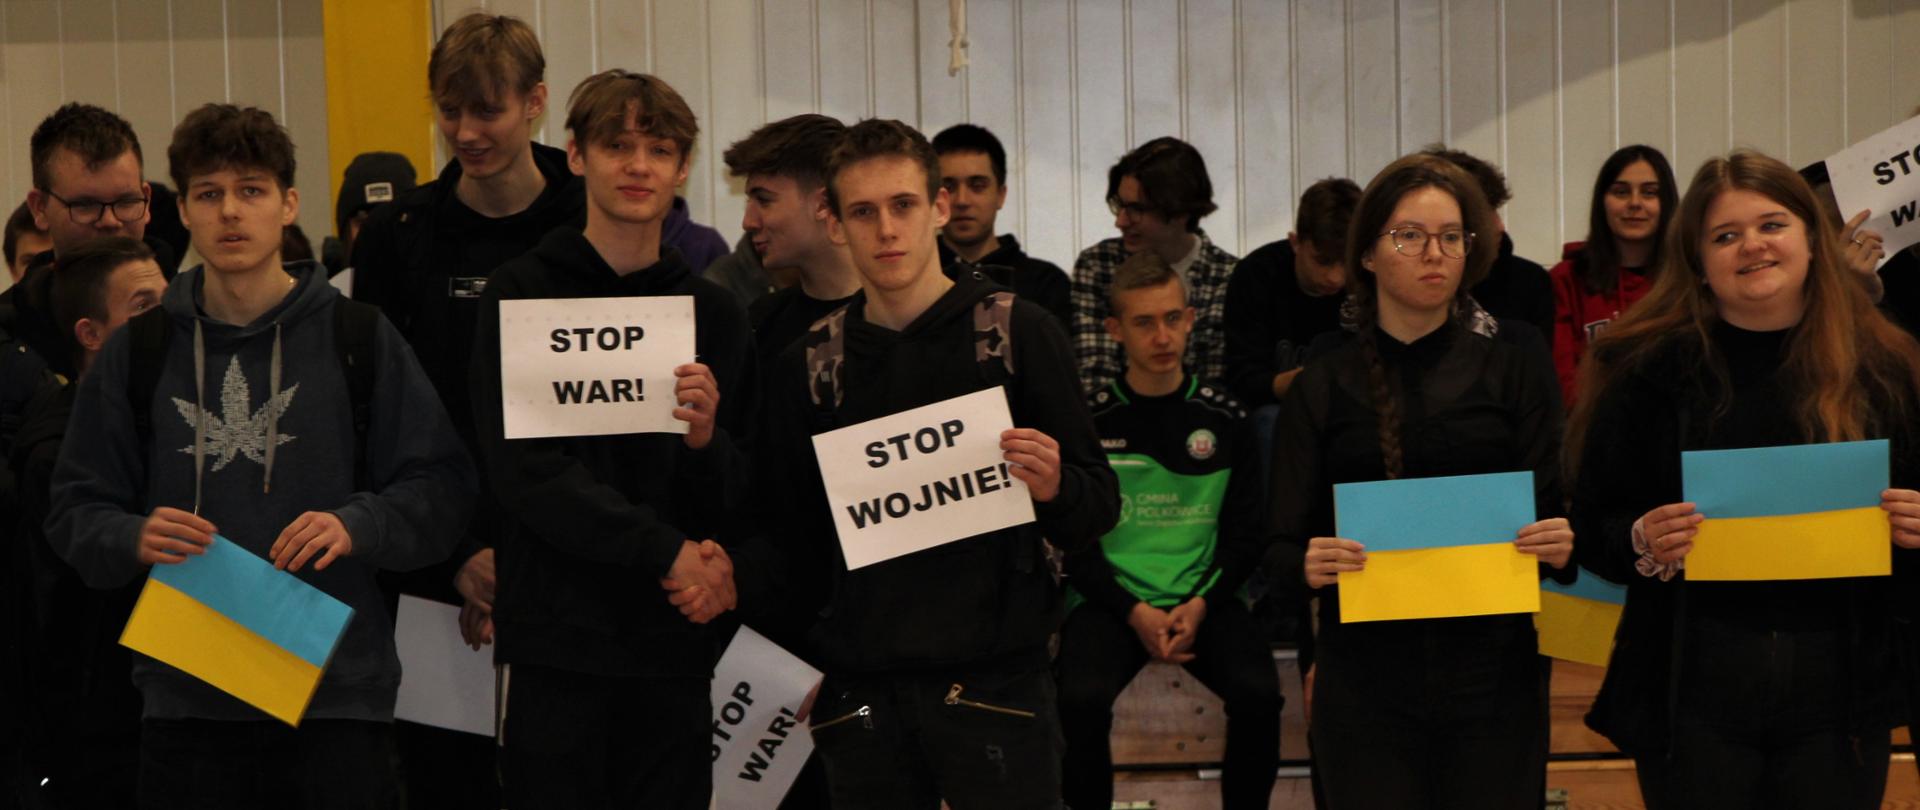 Uczniowie Zespołu Szkół w Chocianowie podczas manifestacji trzymają flagi Ukrainy i kartki z napisem "Stop Wojnie"